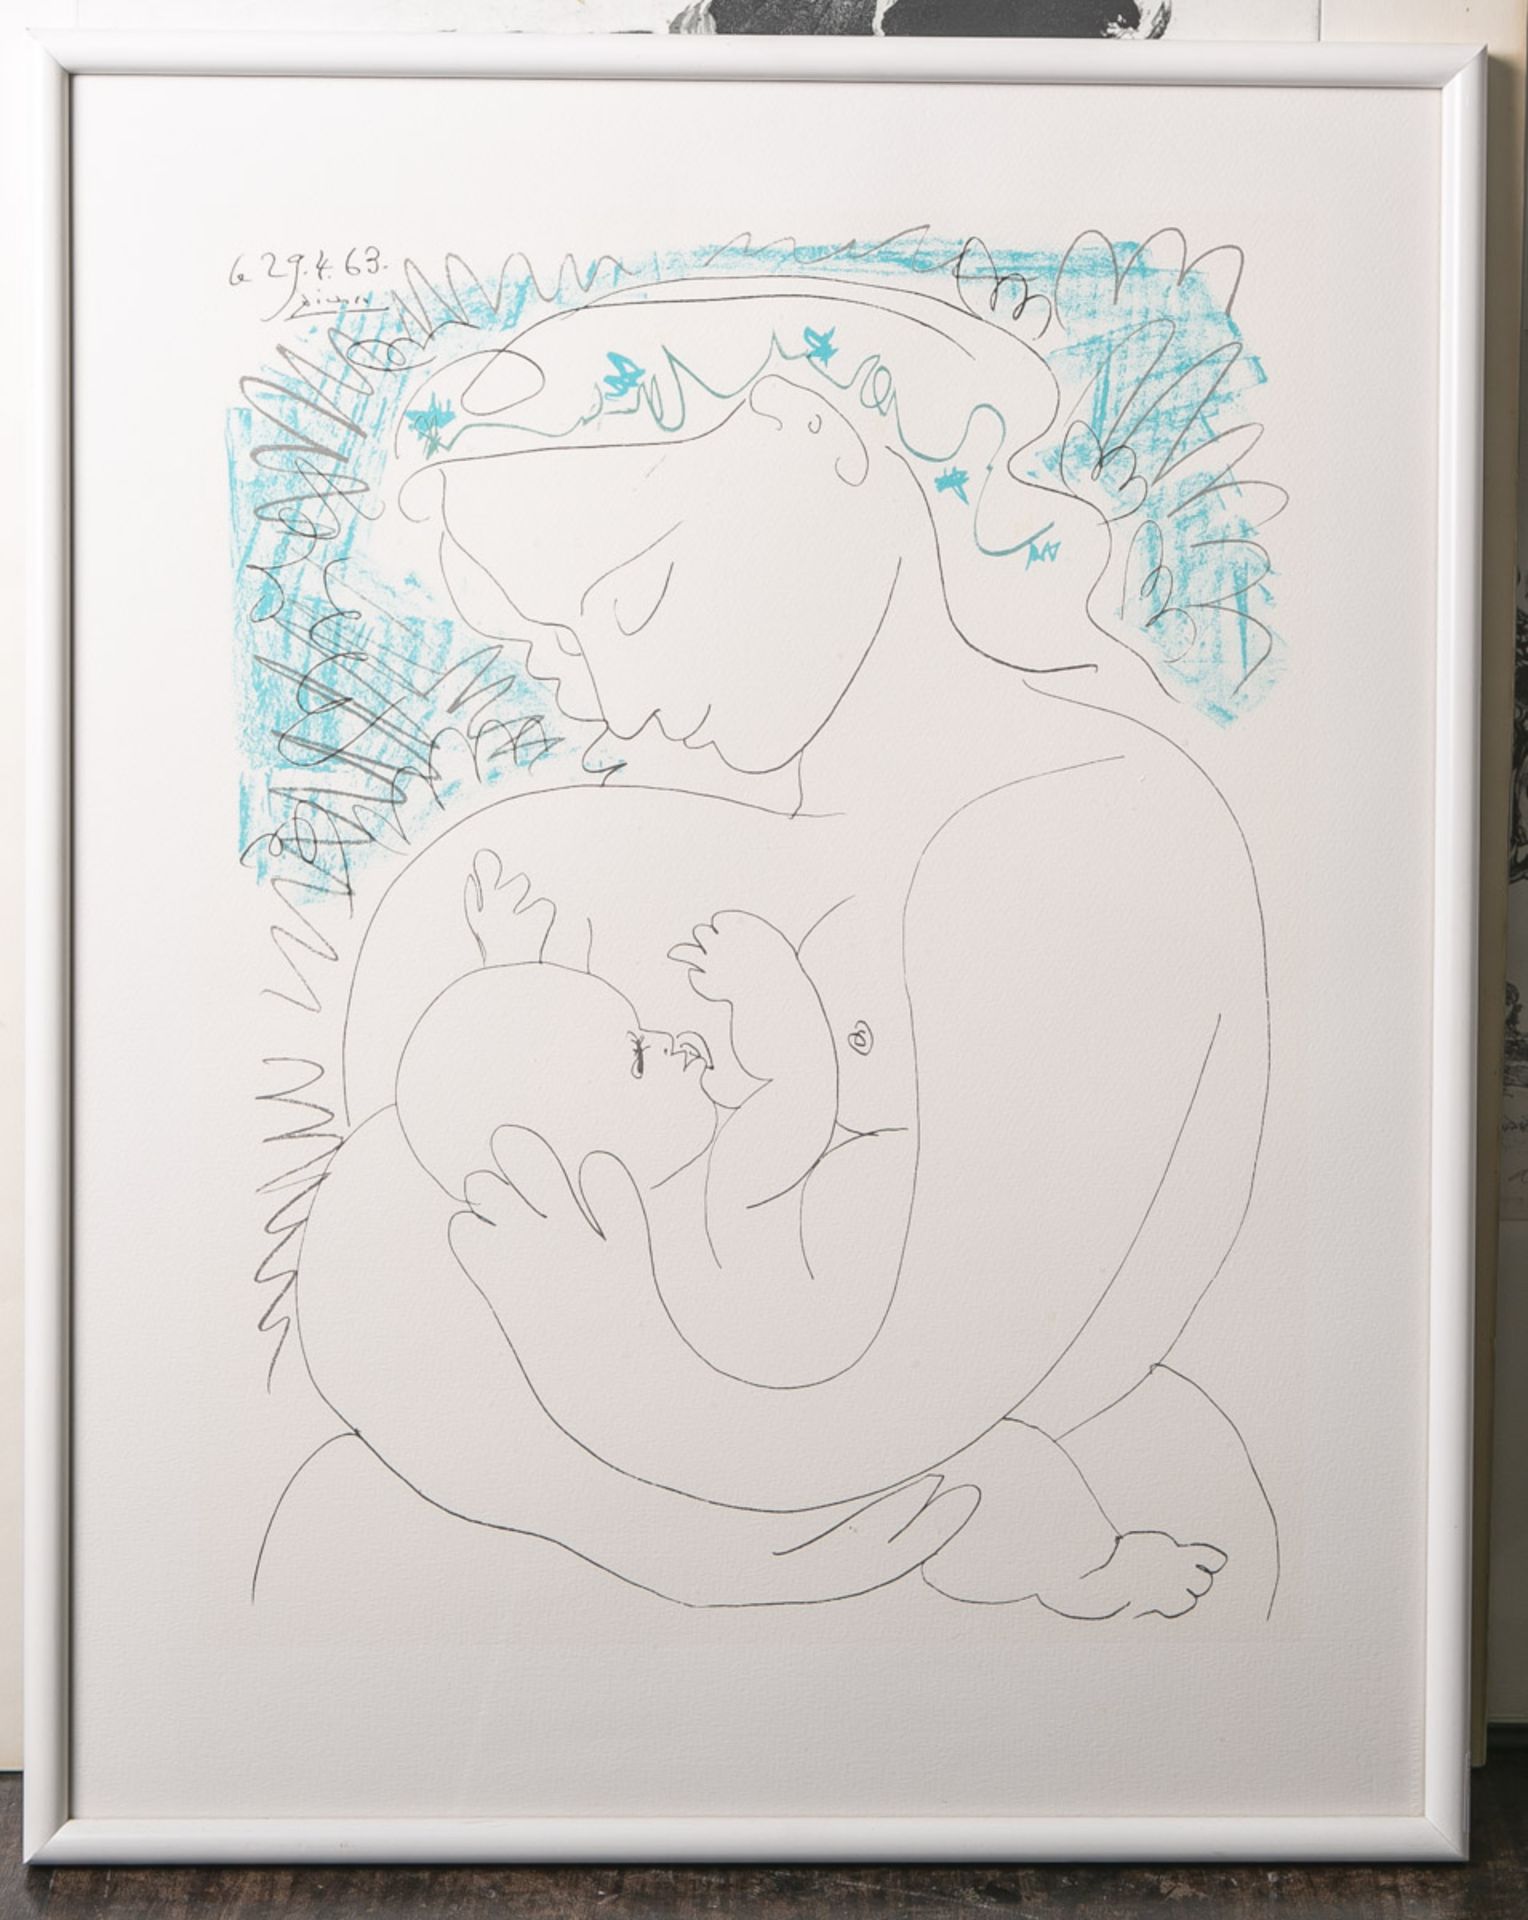 Picasso, Pablo (1881 - 1973), "Maternite", Farblithografie, li. oben in der Platte sign.